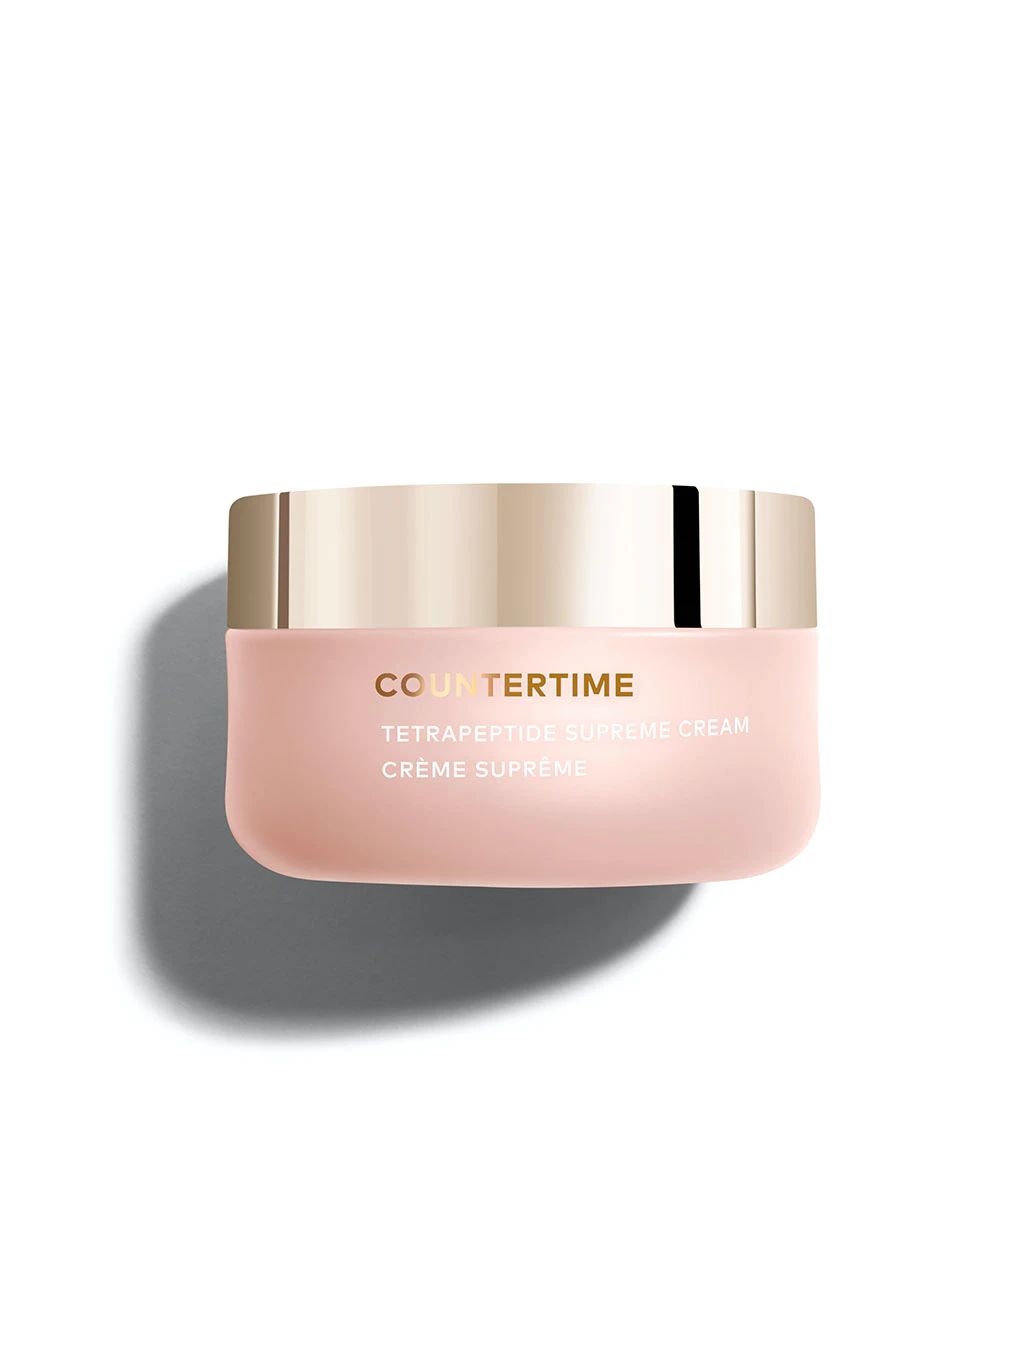 Countertime Tetrapeptide Supreme Cream | Beautycounter